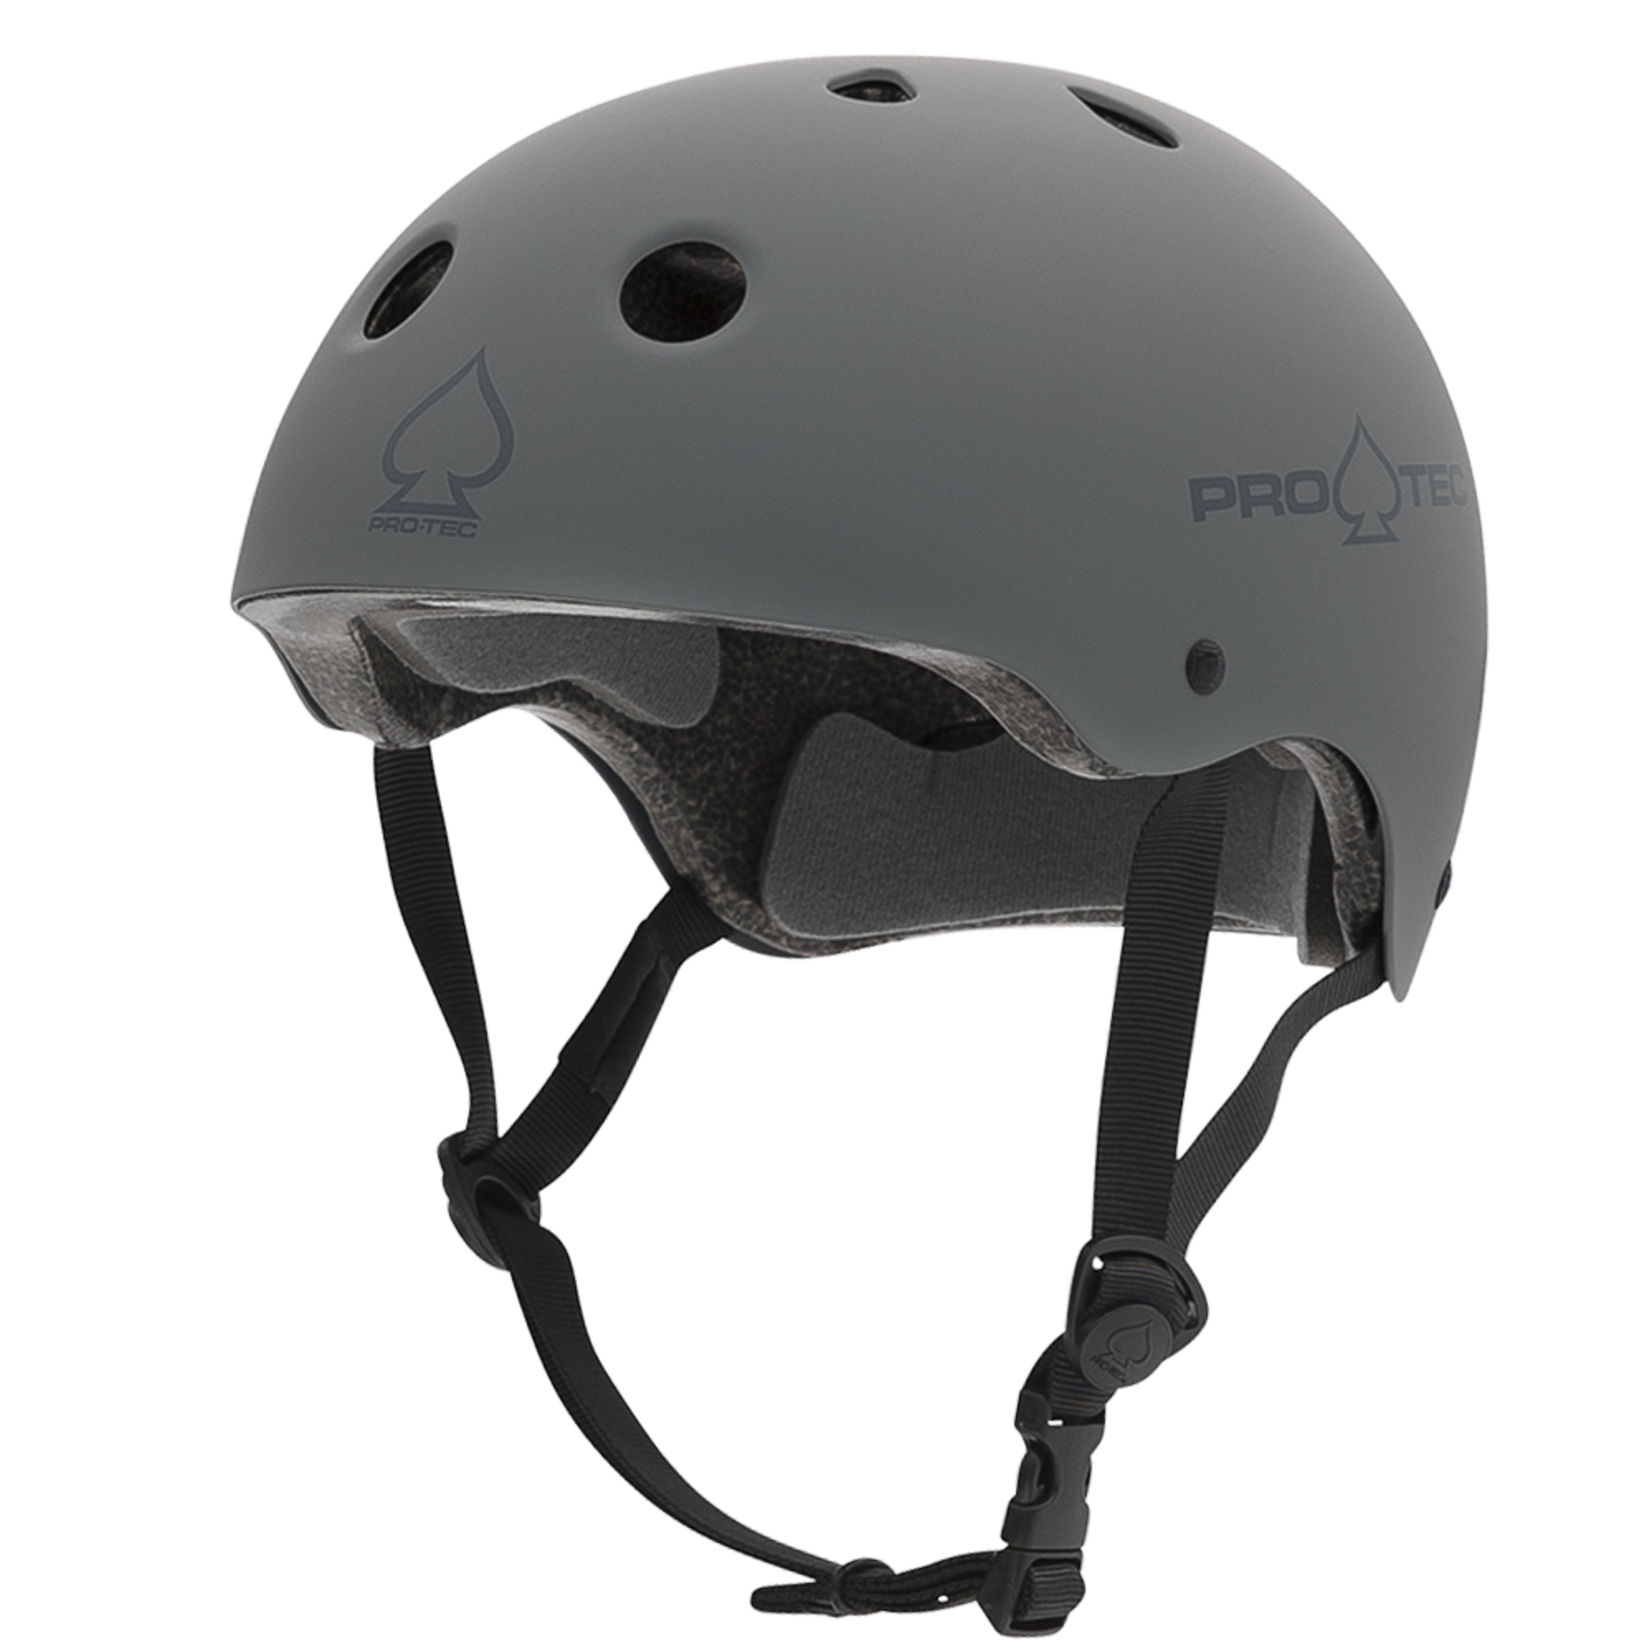 PRO-TEC Pro-Tec Certified Helmet - Matte Gray